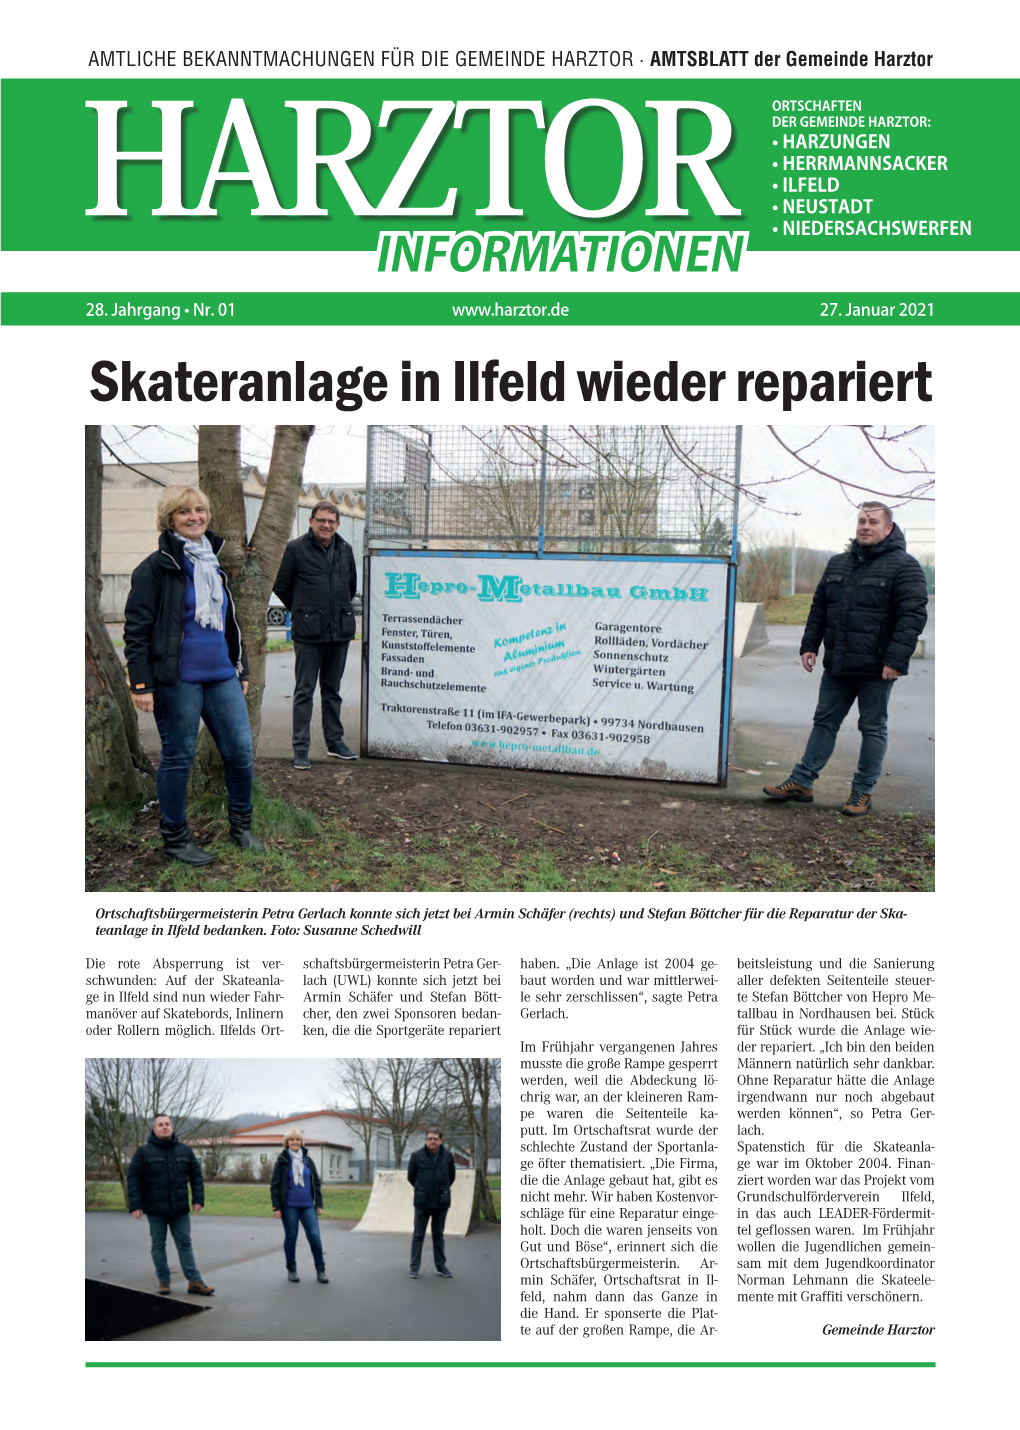 Skateranlage in Ilfeld Wieder Repariert